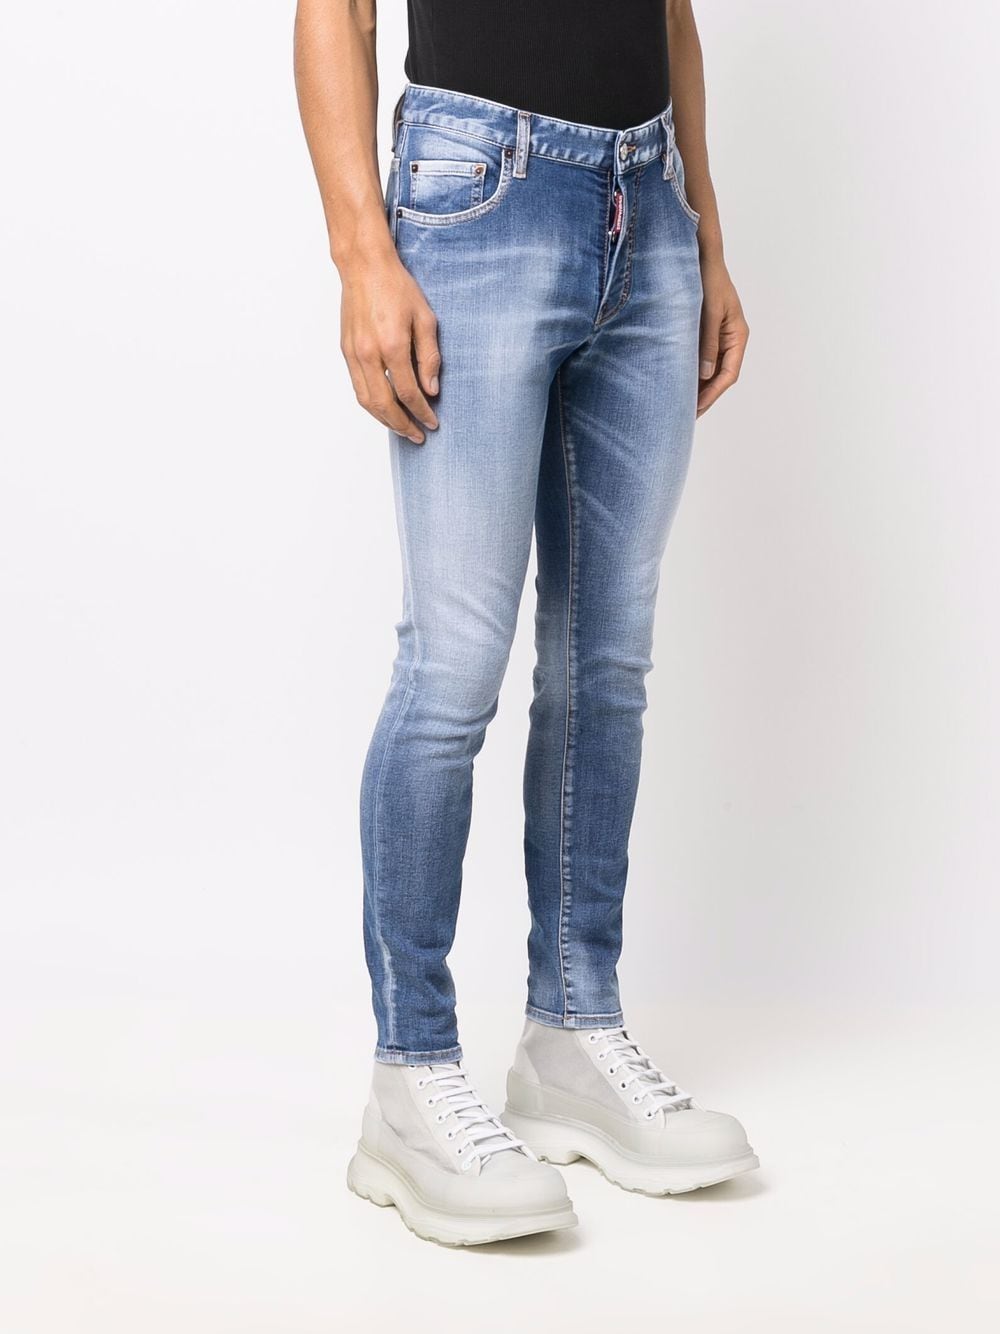 фото Dsquared2 джинсы скинни с карманами